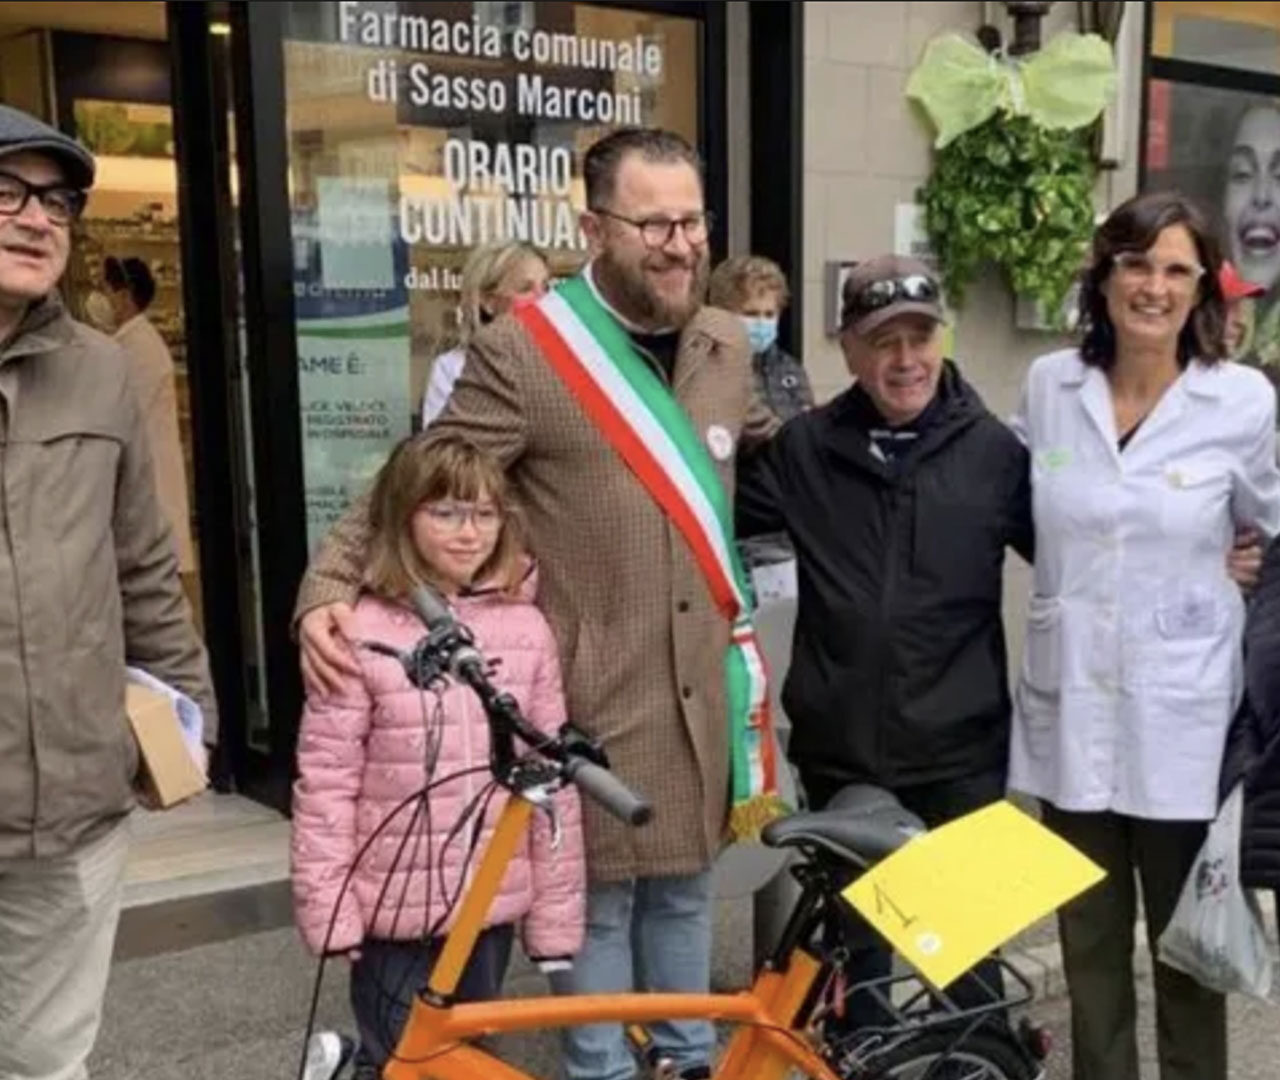 La farmacia Comunale di Sasso Marconi festeggia cinque anni di gestione regalando una bici elettrica